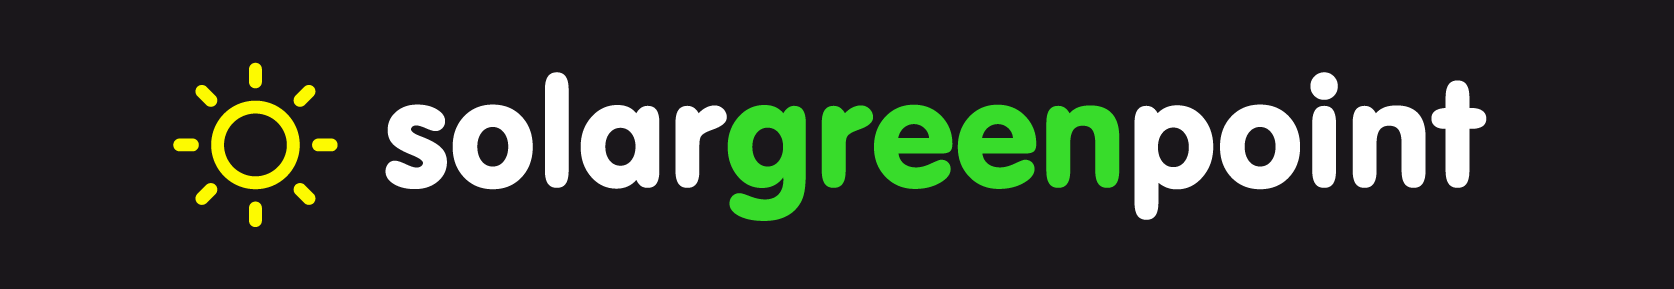 solargreenpoint logo